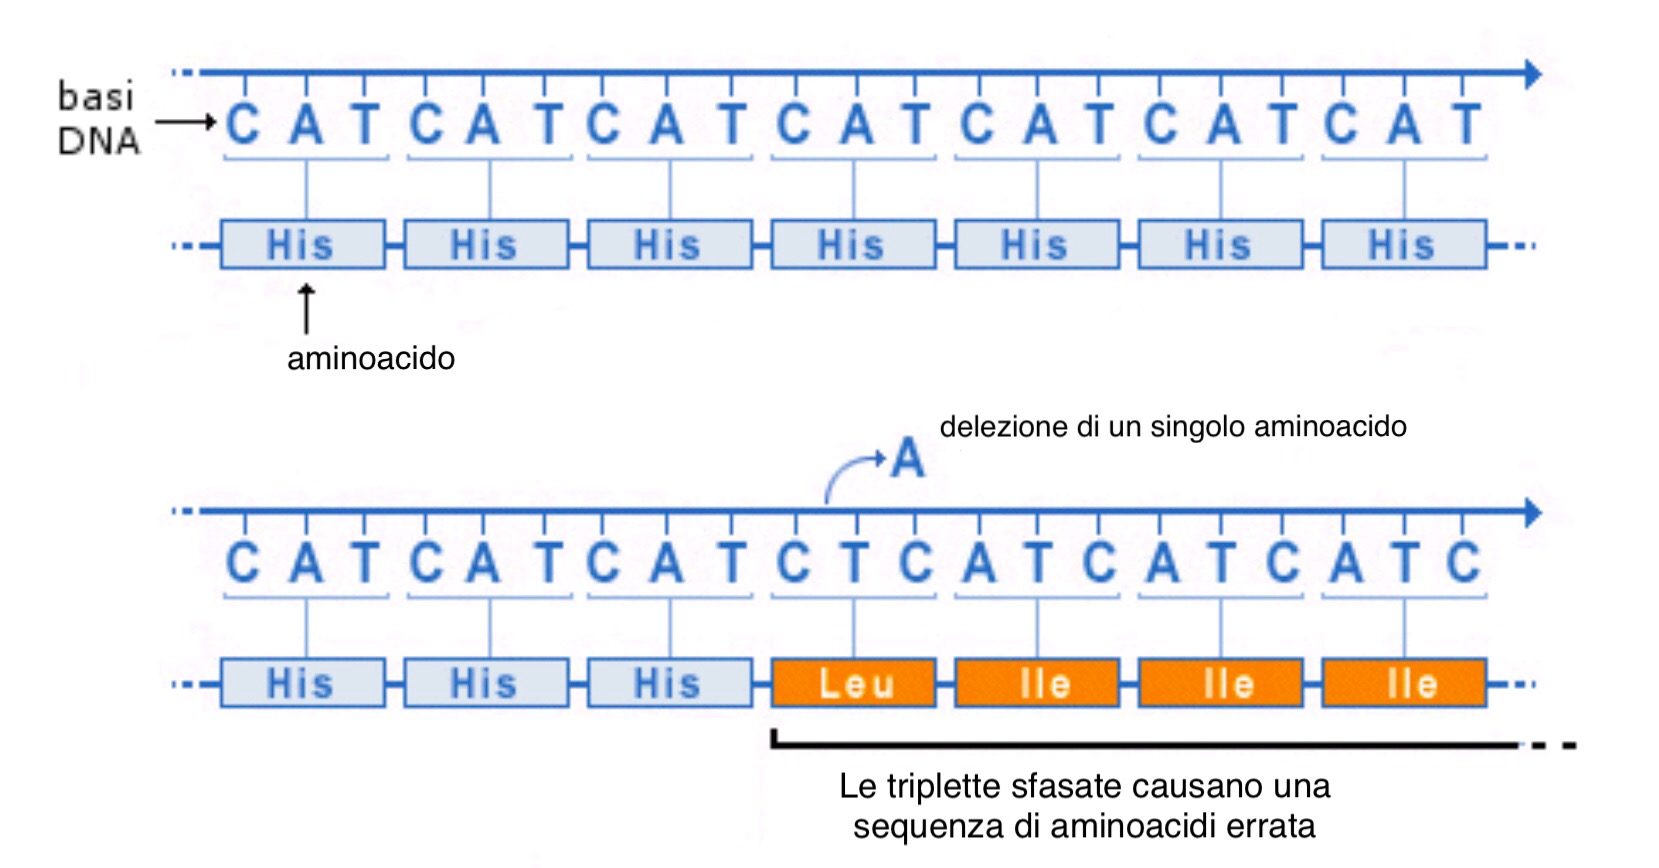 Delezione di un nucleotide 